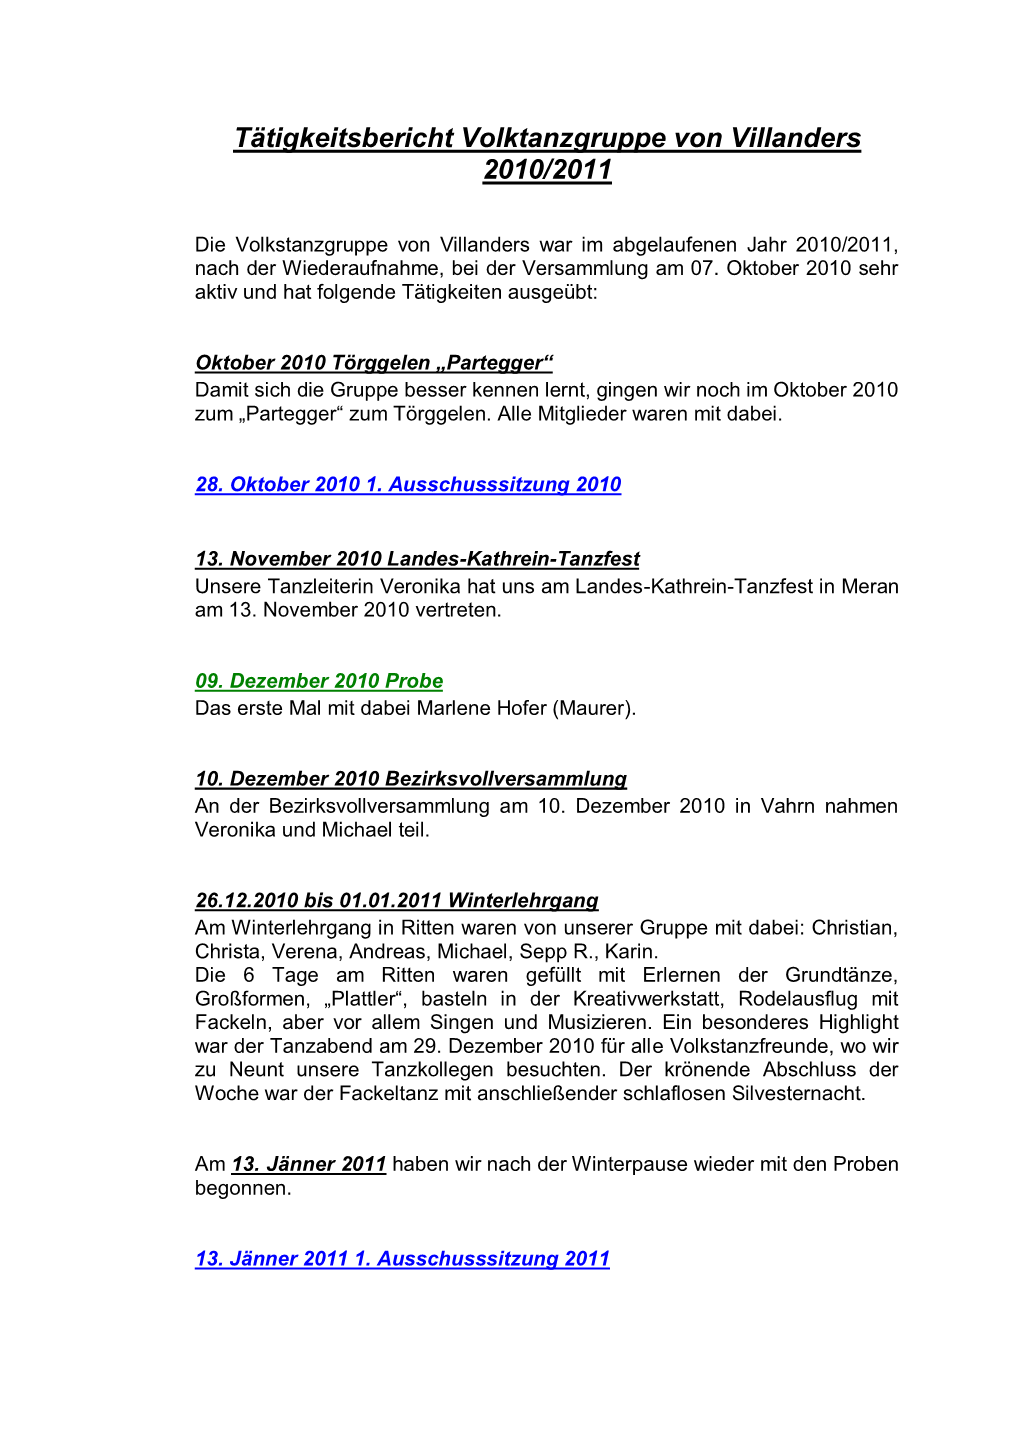 Tätigkeitsbericht Volktanzgruppe Von Villanders 2010/2011